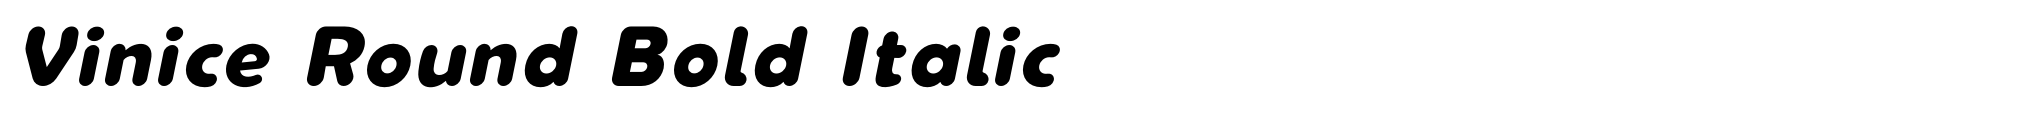 Vinice Round Bold Italic image